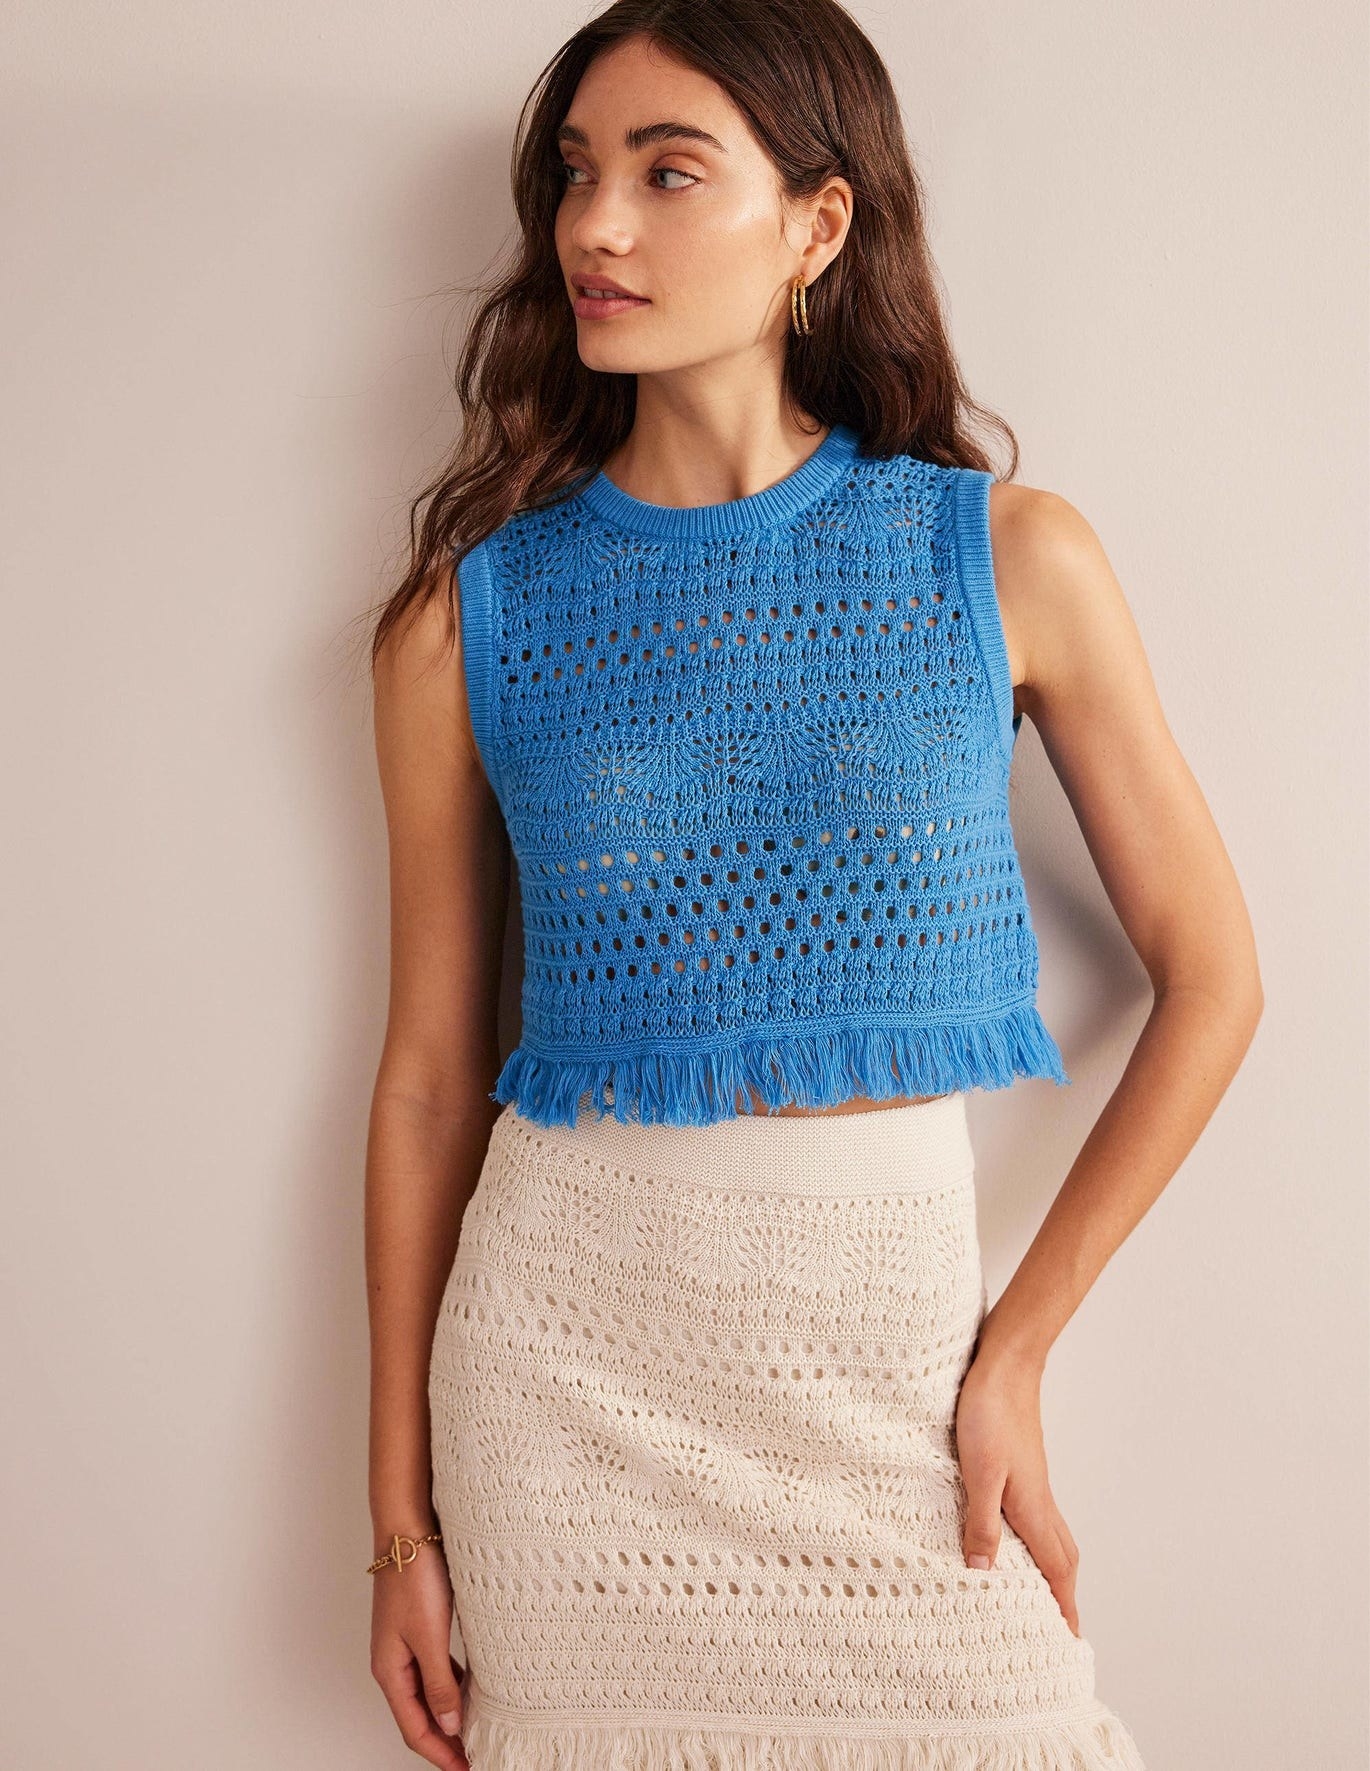 model in cropped bright blue crochet tank